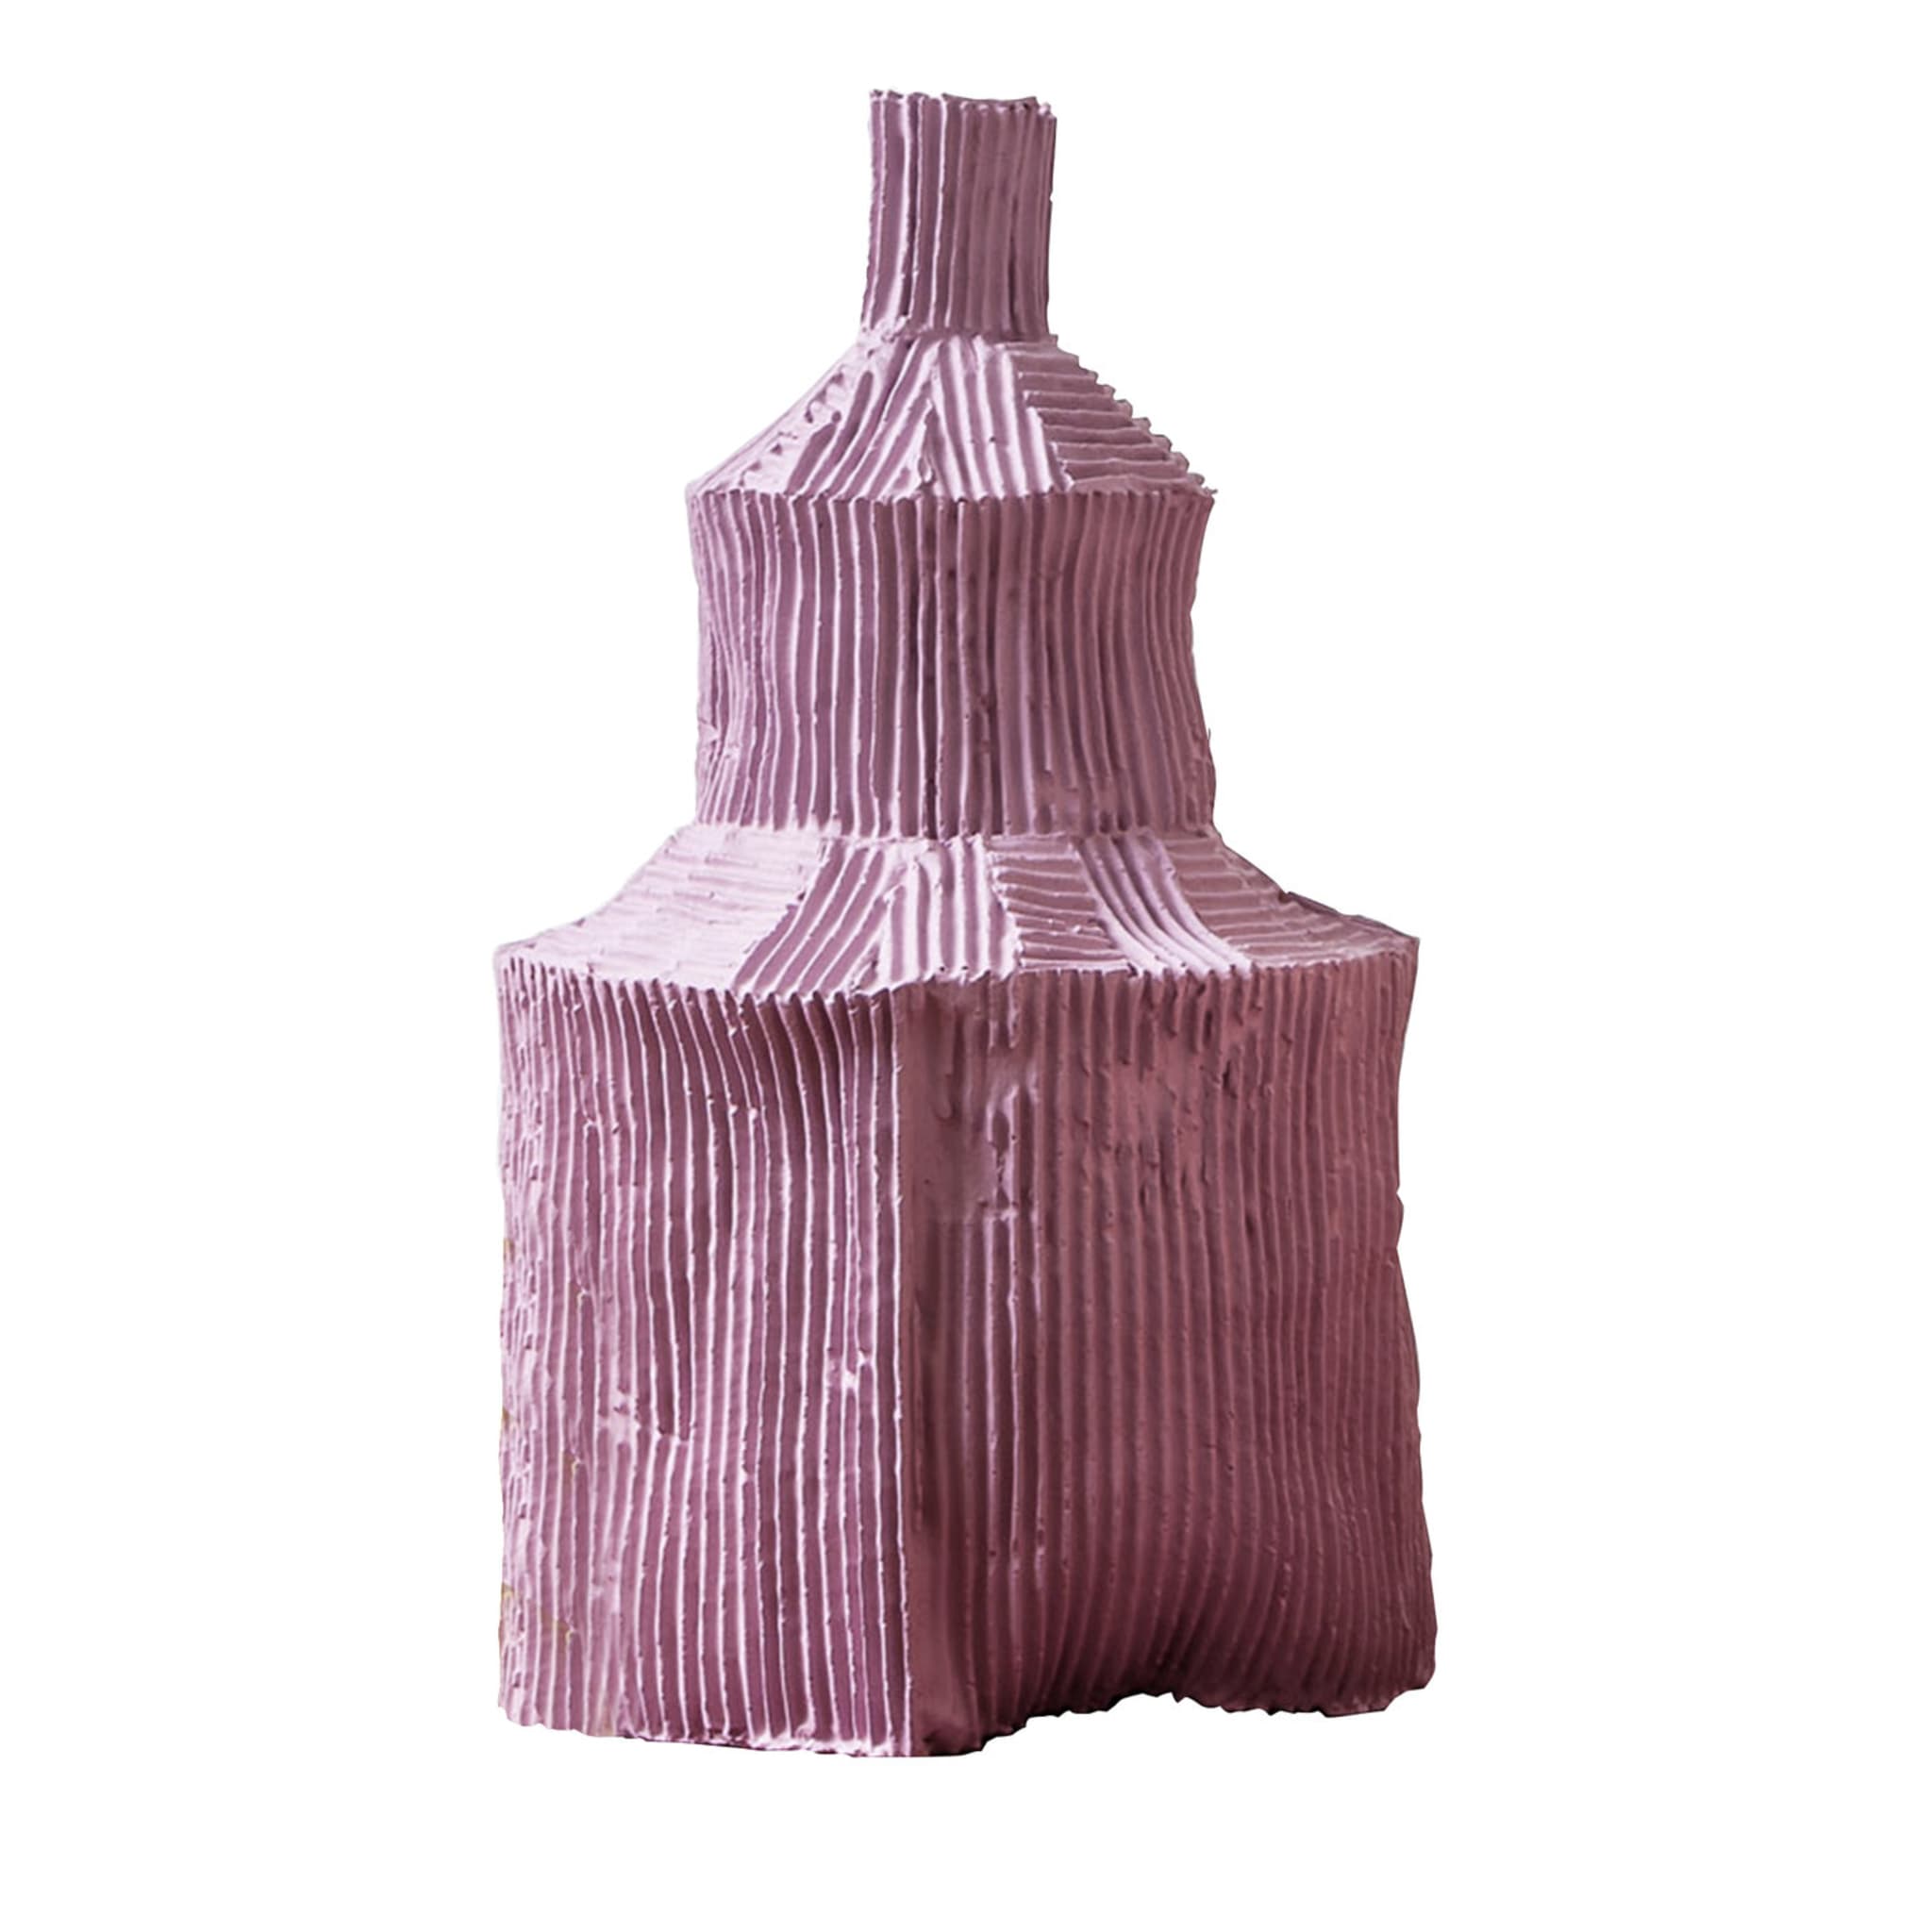 Fide Corteccia Pink Decorative Bottle - Main view